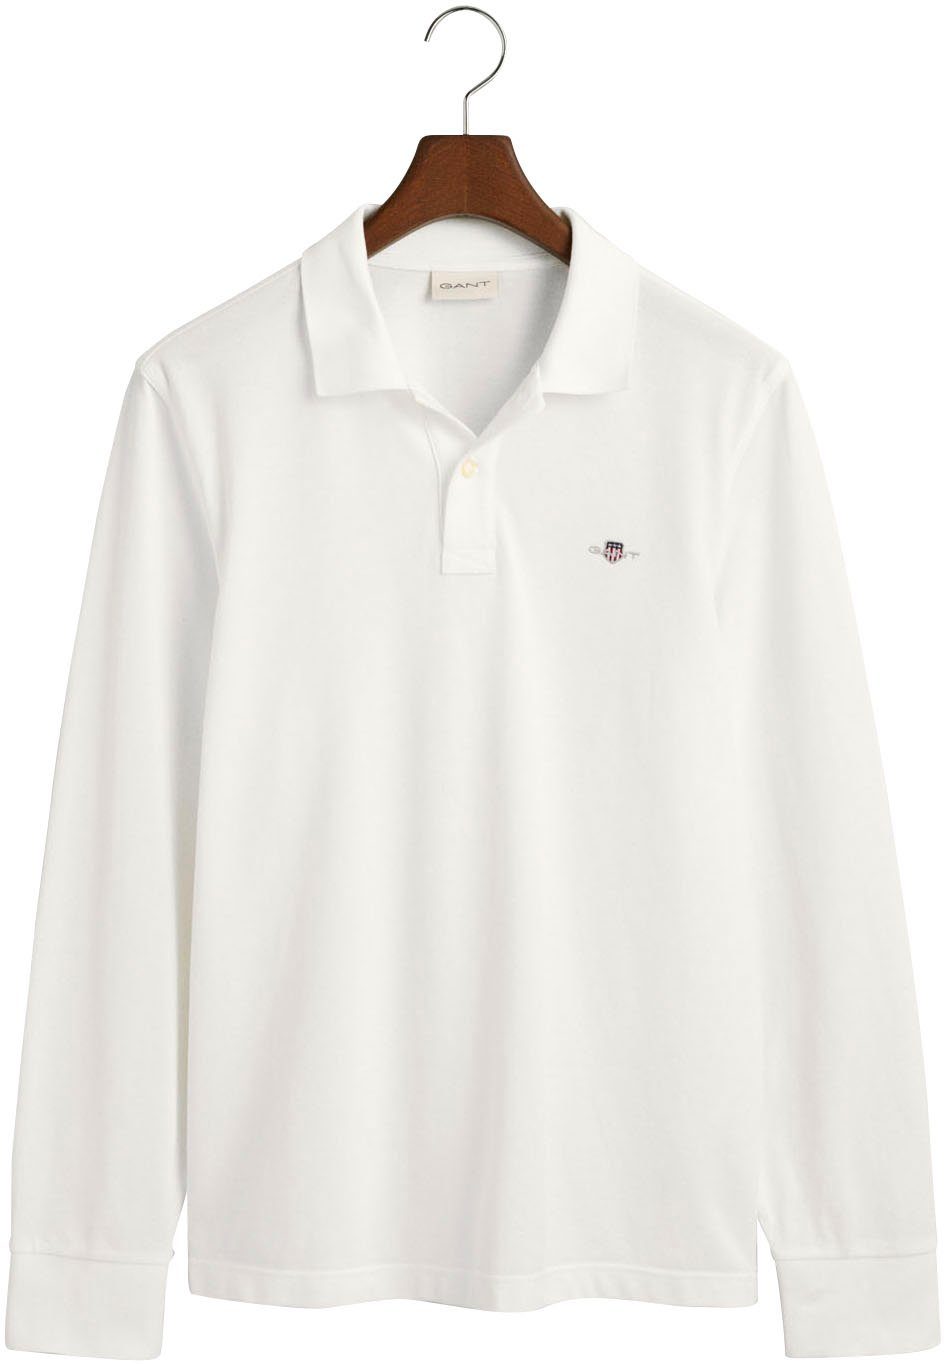 SHIELD PIQUE white Brust Poloshirt der REG auf RUGGER mit LS Logotickerei Gant